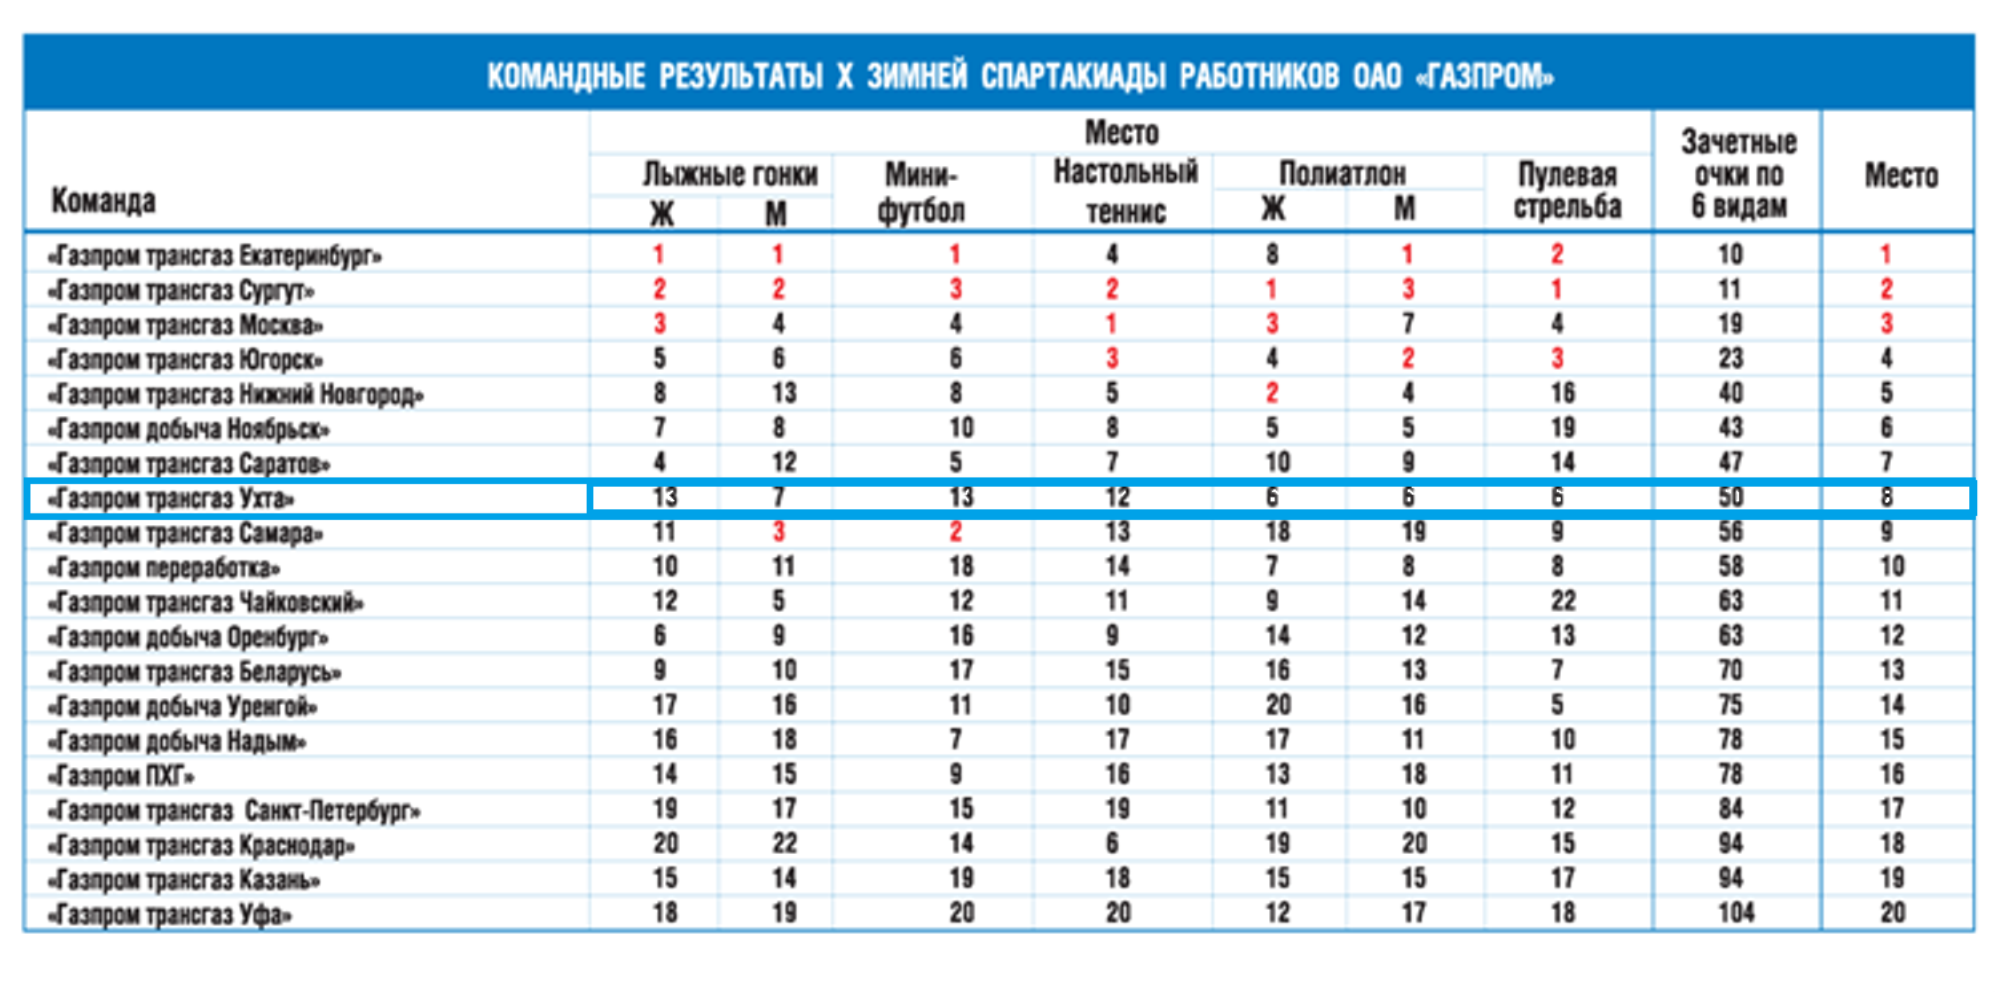 Количество трансгазов в Газпроме.